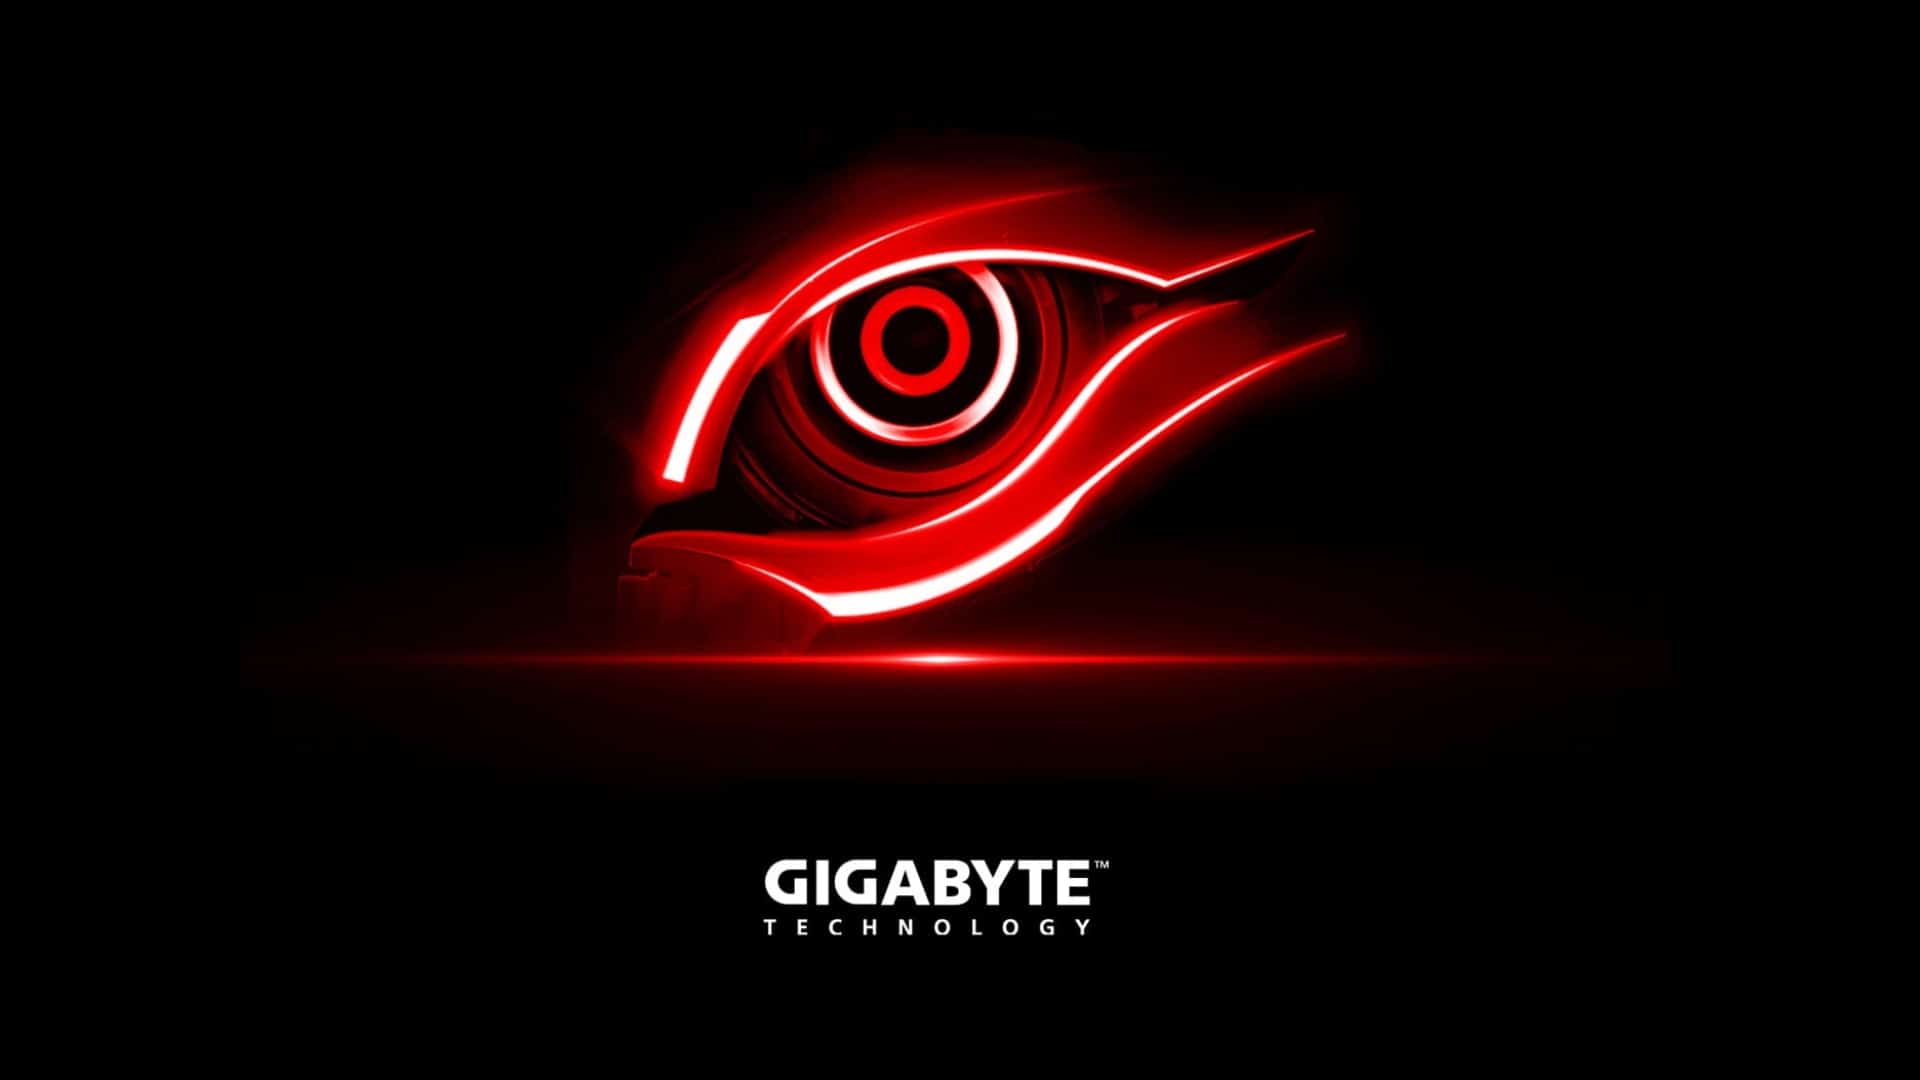 GIGABYTE ha sido atacado por hackers y roban 112GB en información2